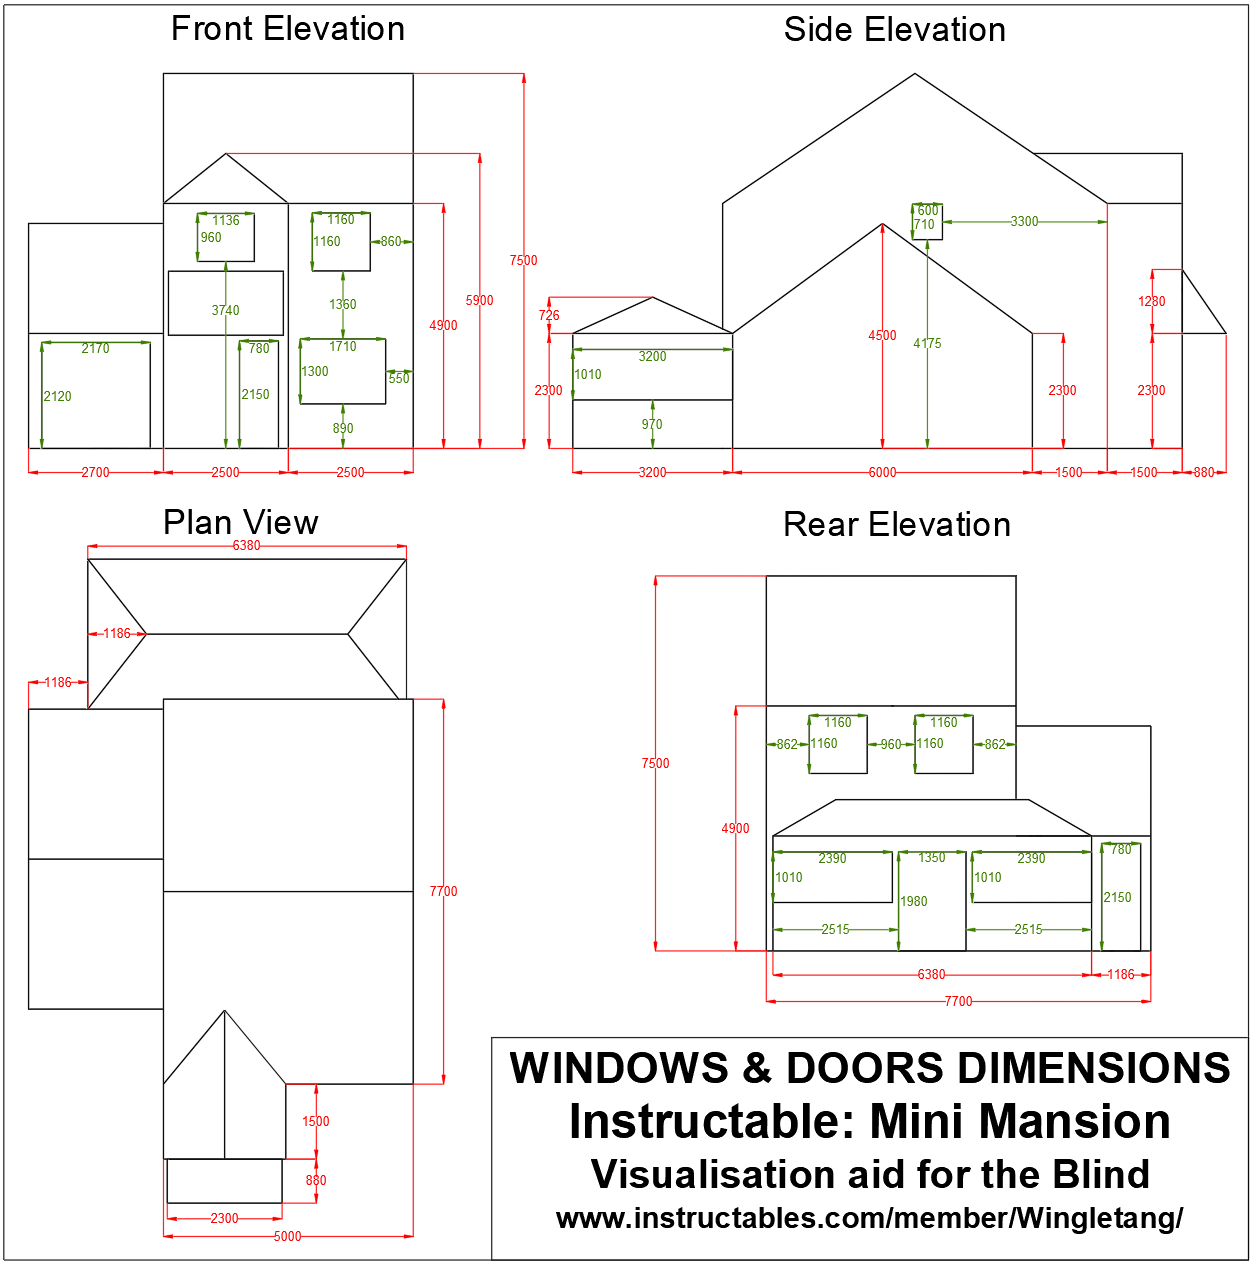 Window &amp; Door Dimensions.png